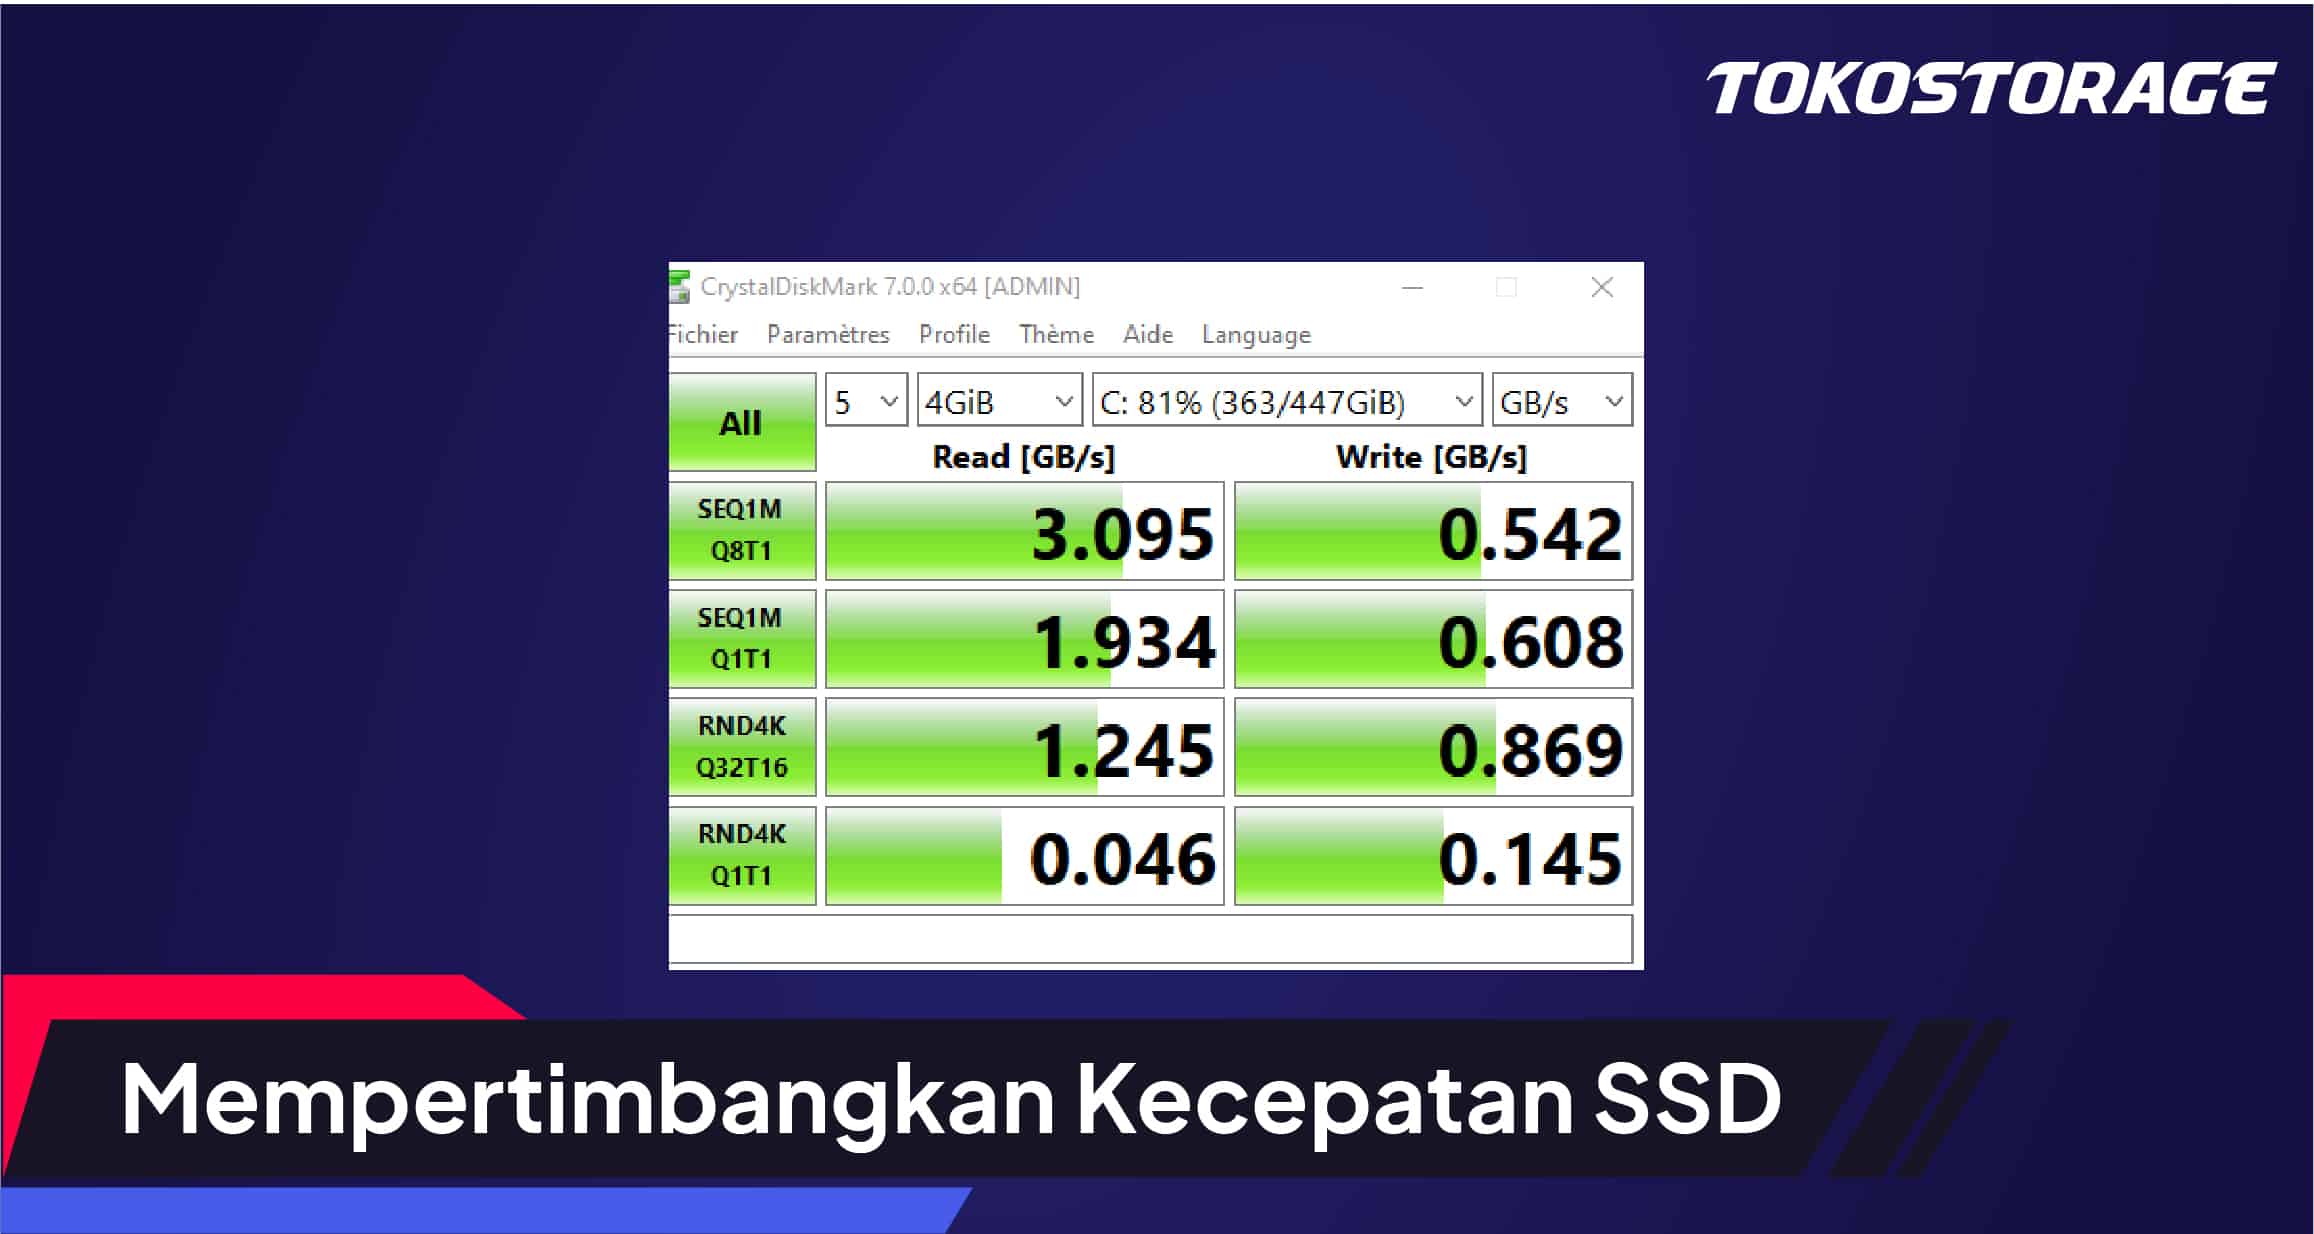 Toko Storage - Tips Memilih SSD Terbaik : Mempertimbangkan Kecepatan SSD